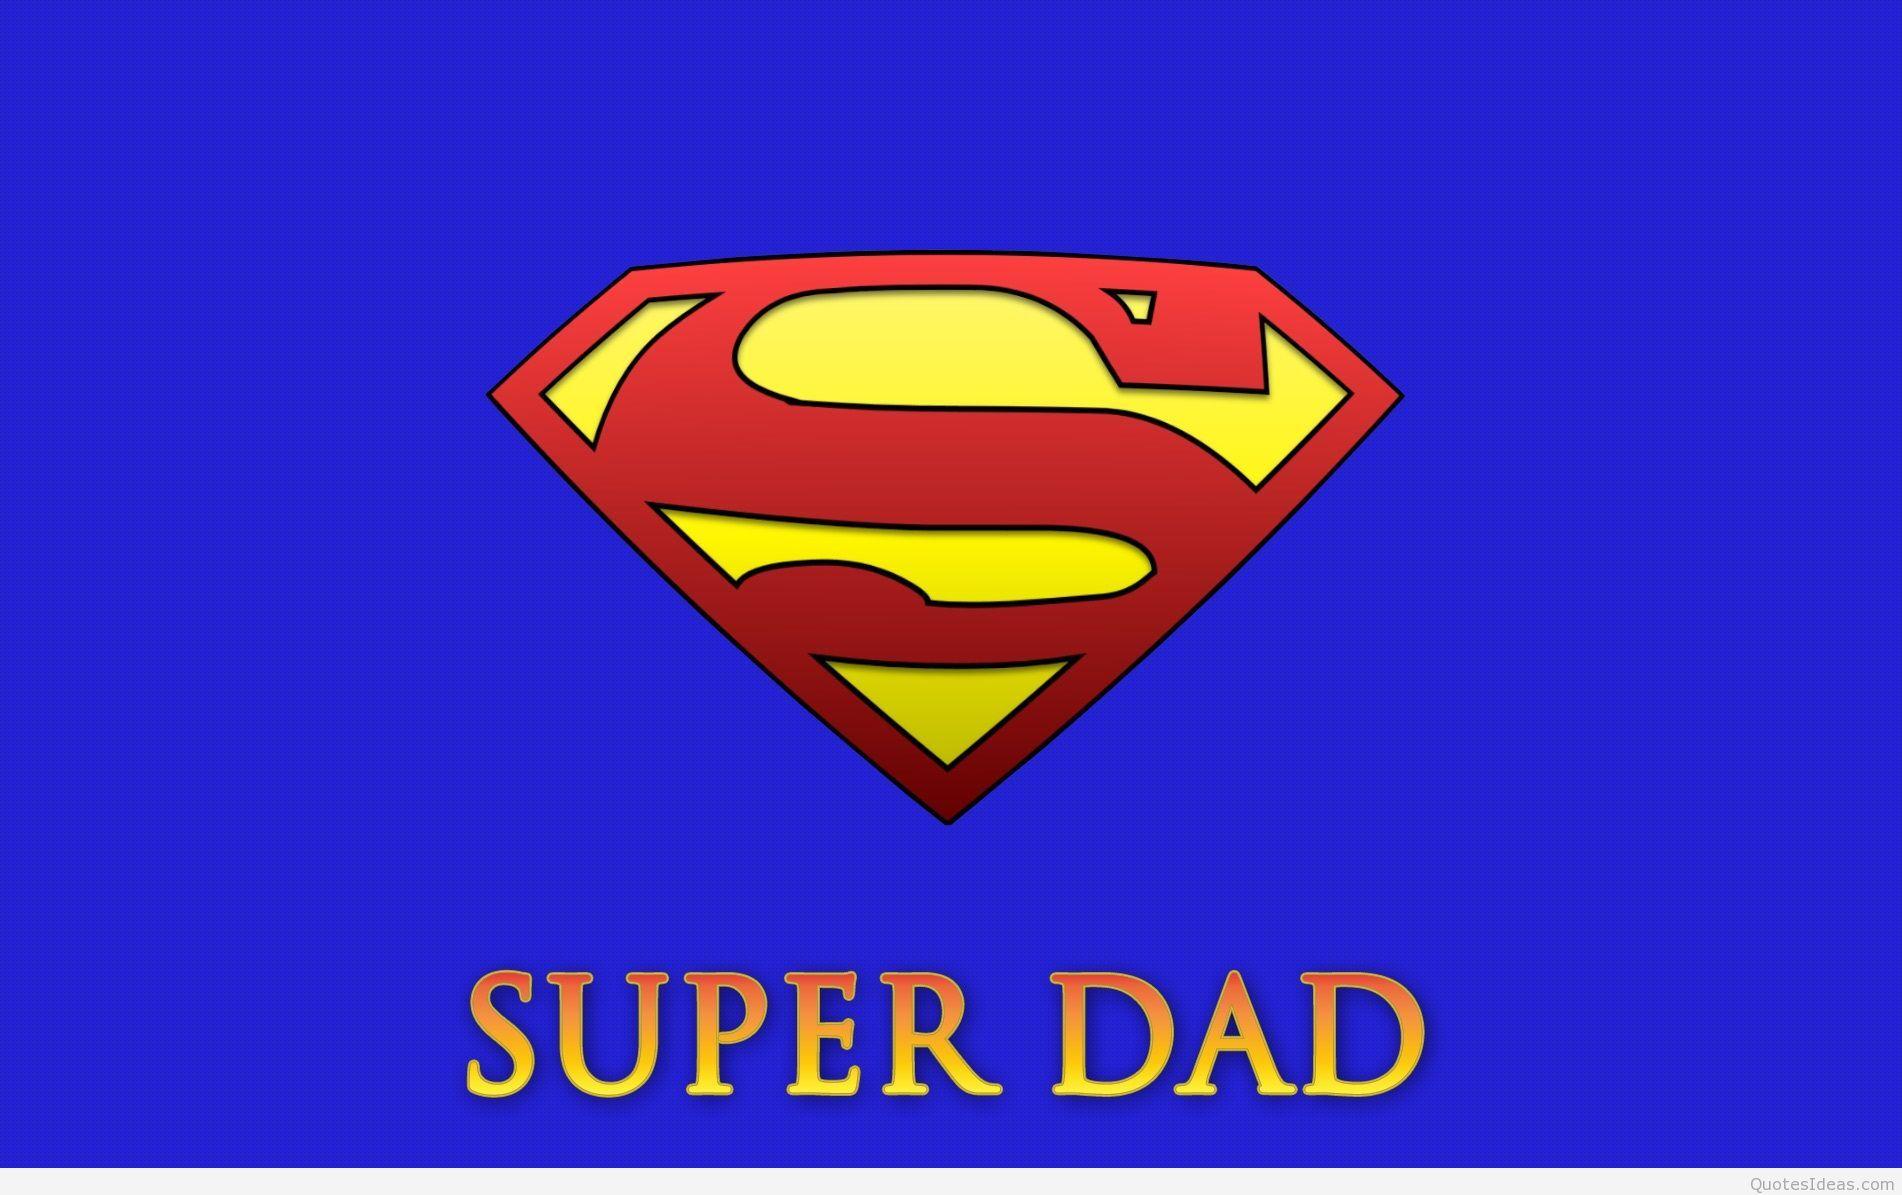 Super dad HD wallpaper